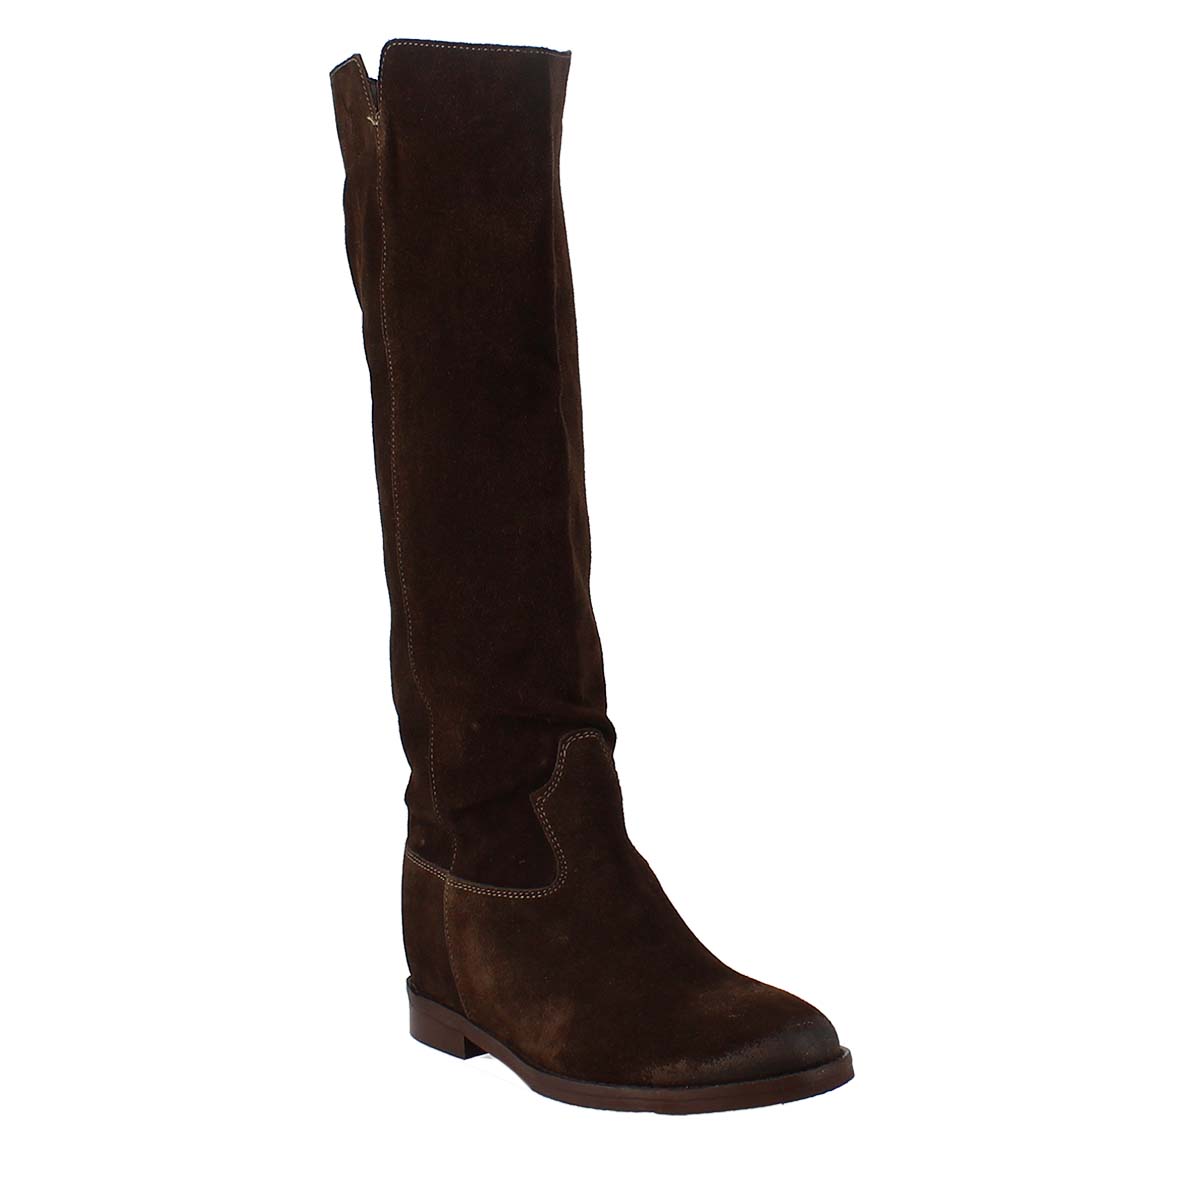 Low heel knee boot in dark brown suede leather